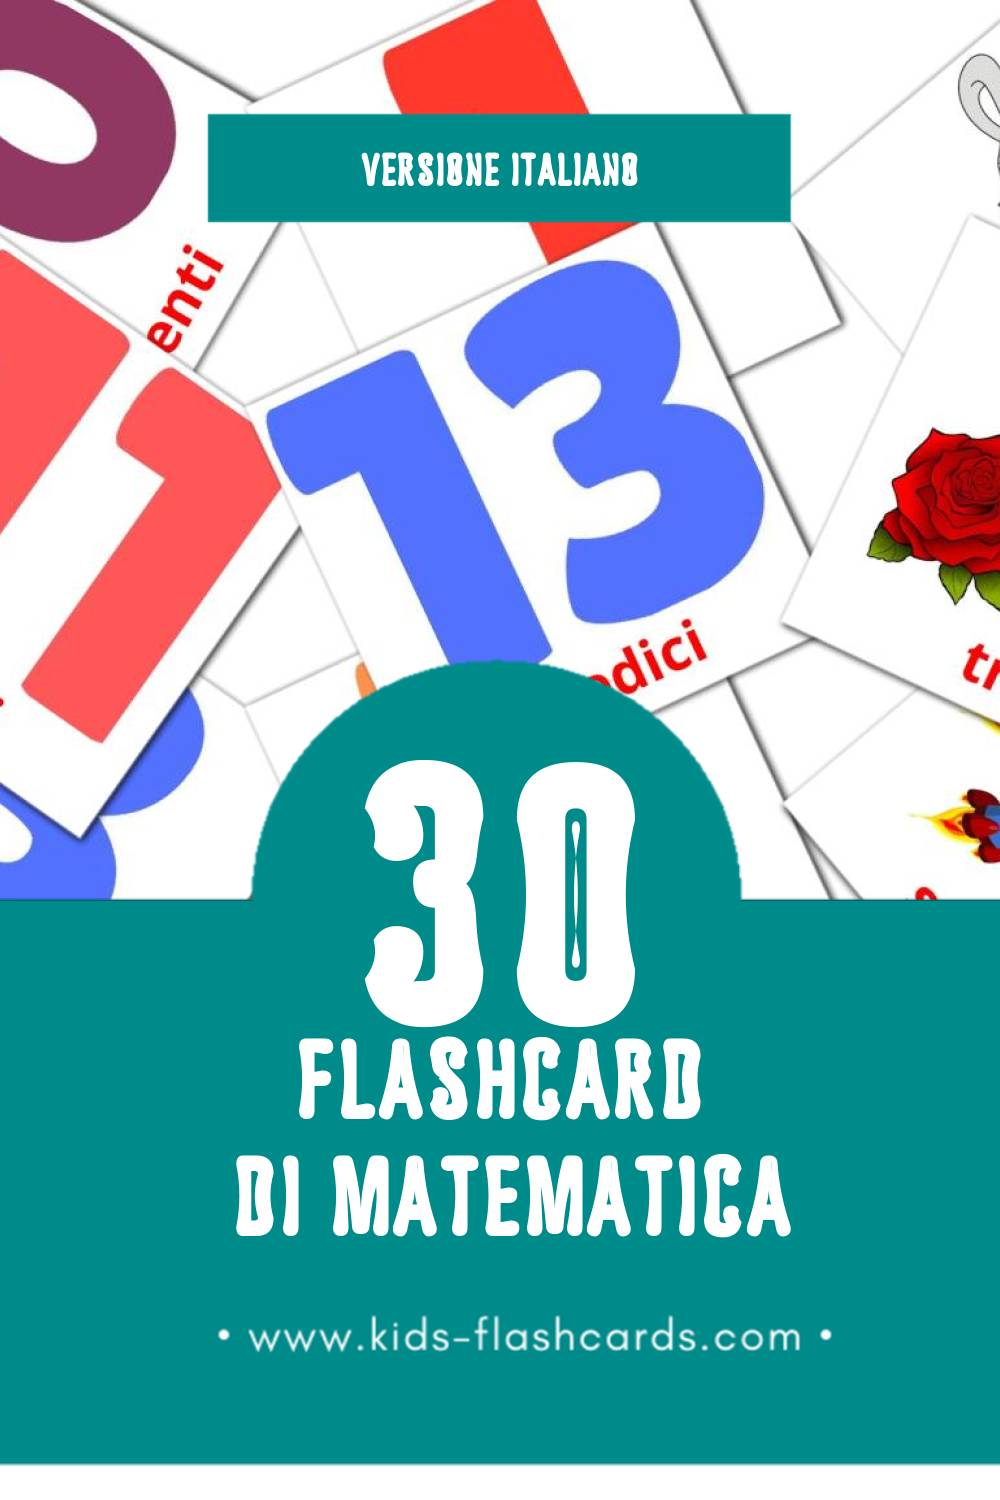 Schede visive sugli Matematica per bambini (30 schede in Italiano)